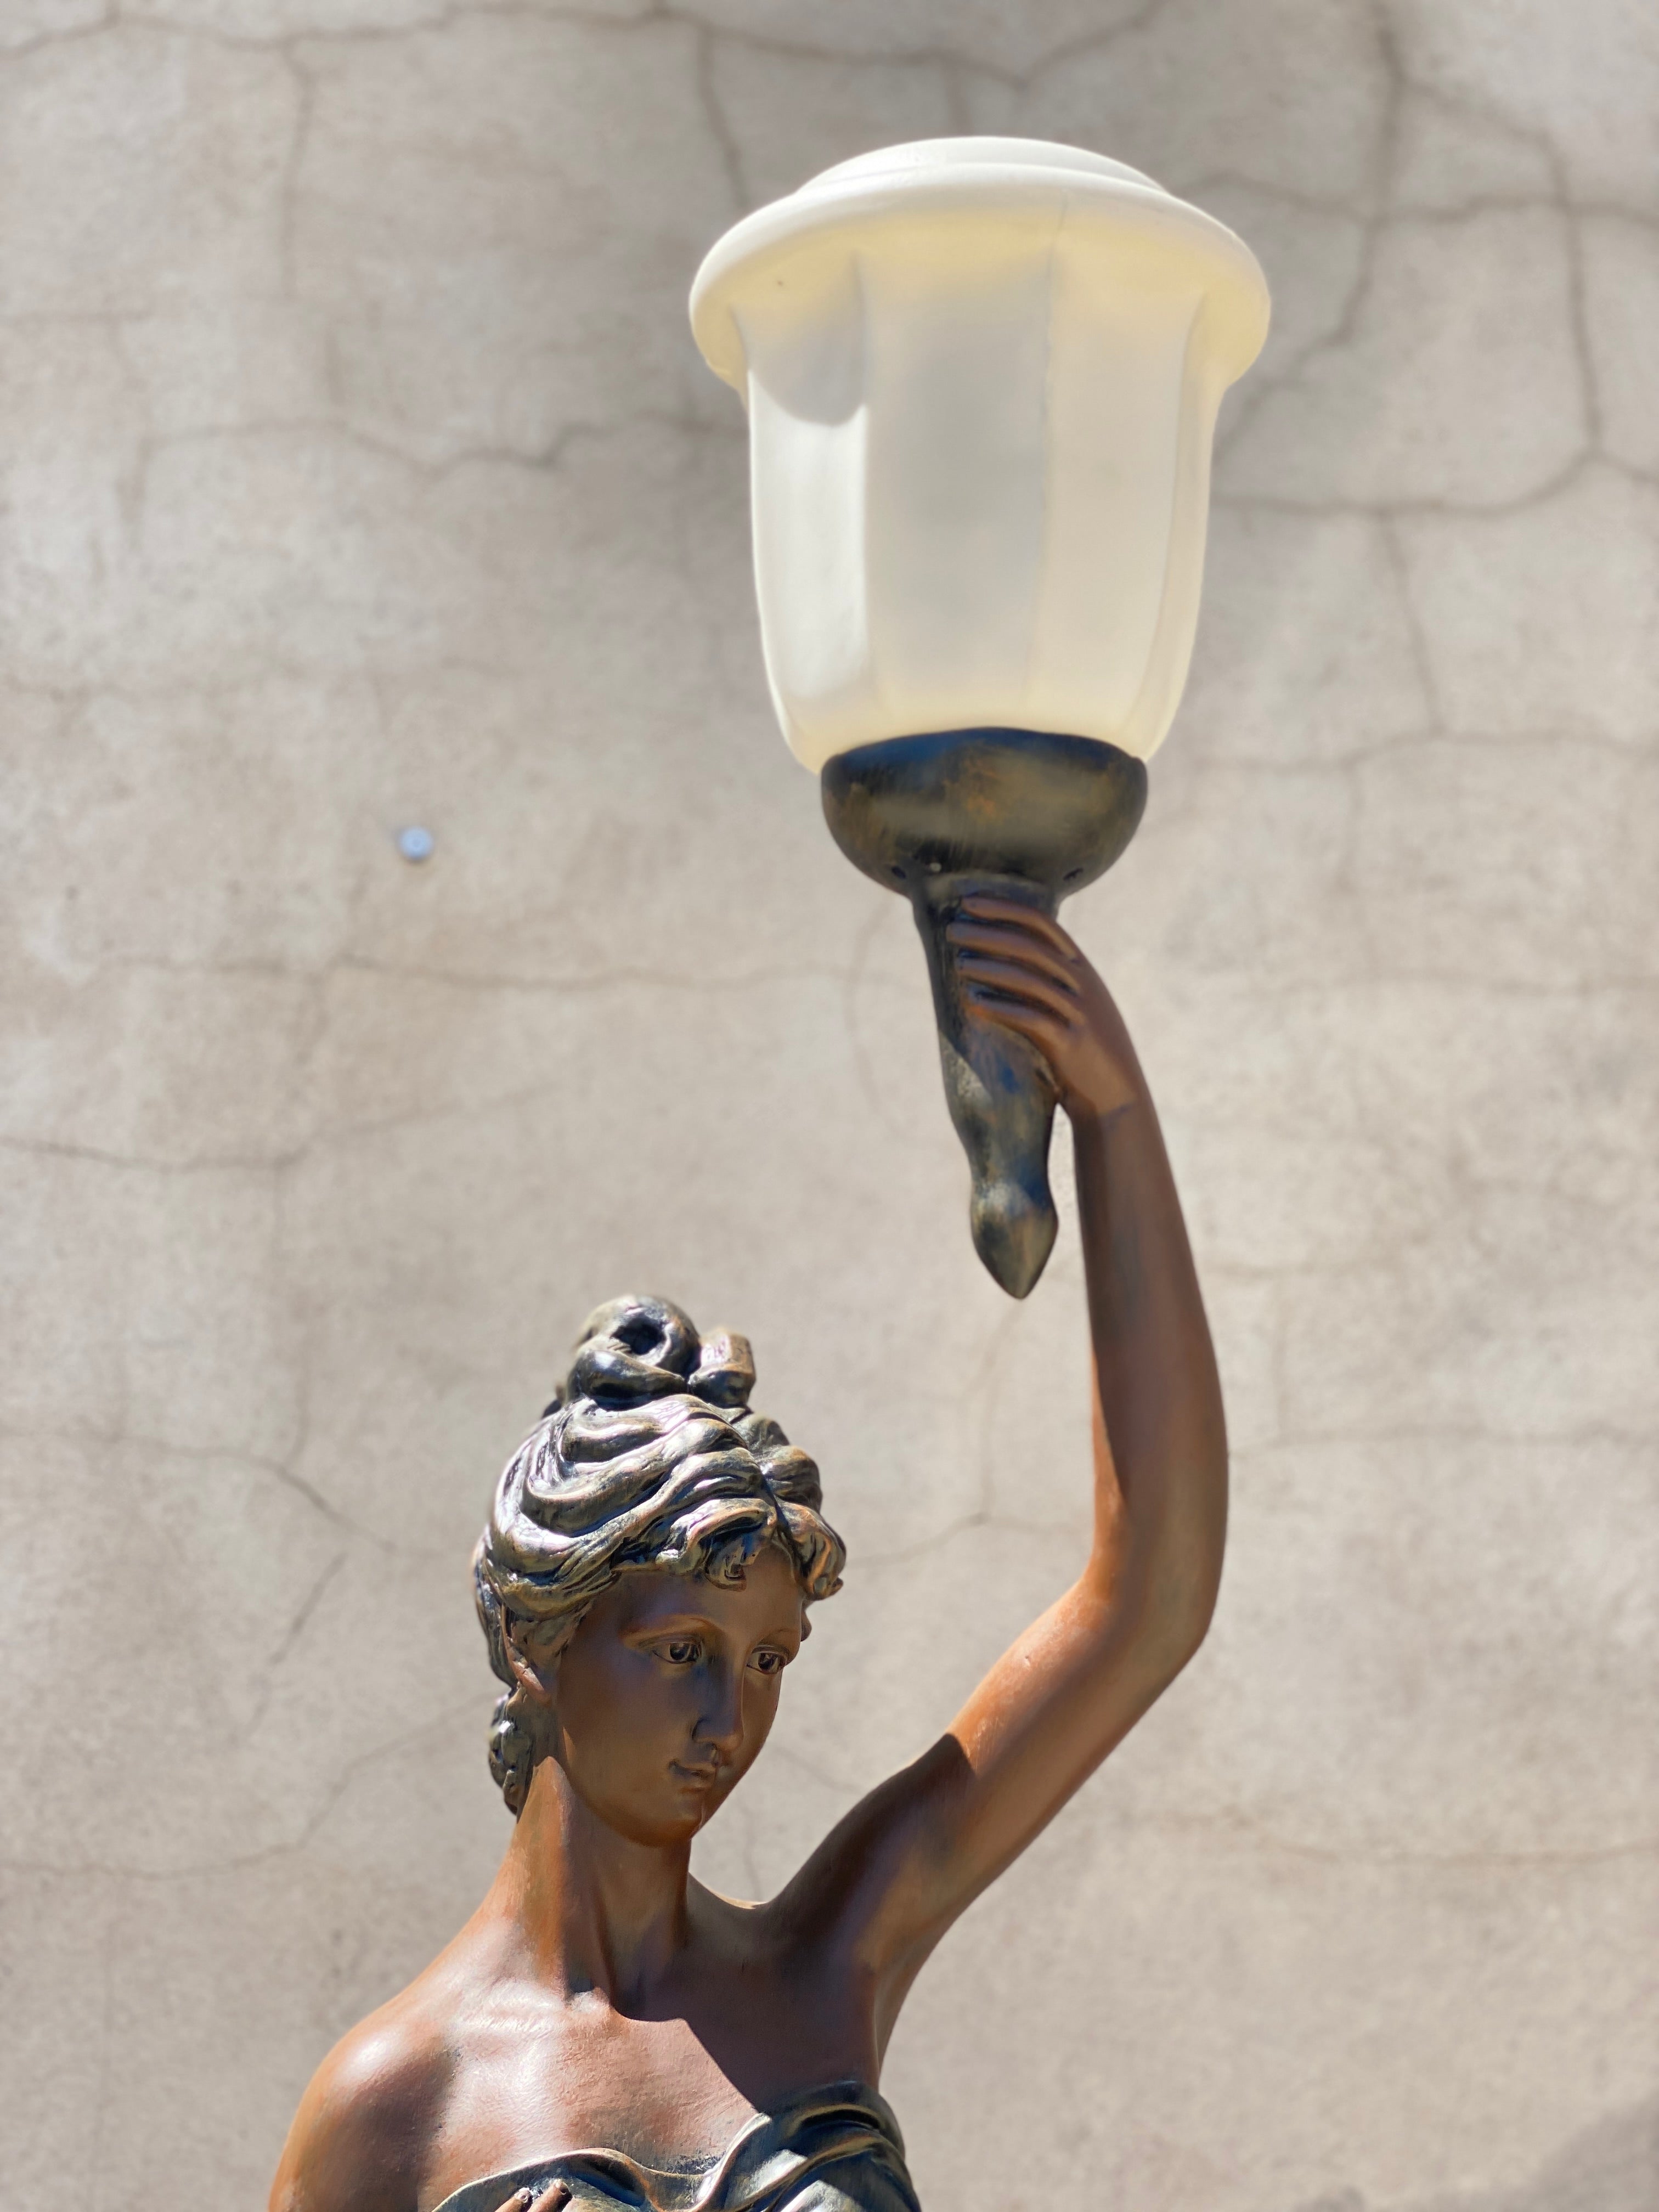 Liberty Lady Lamp